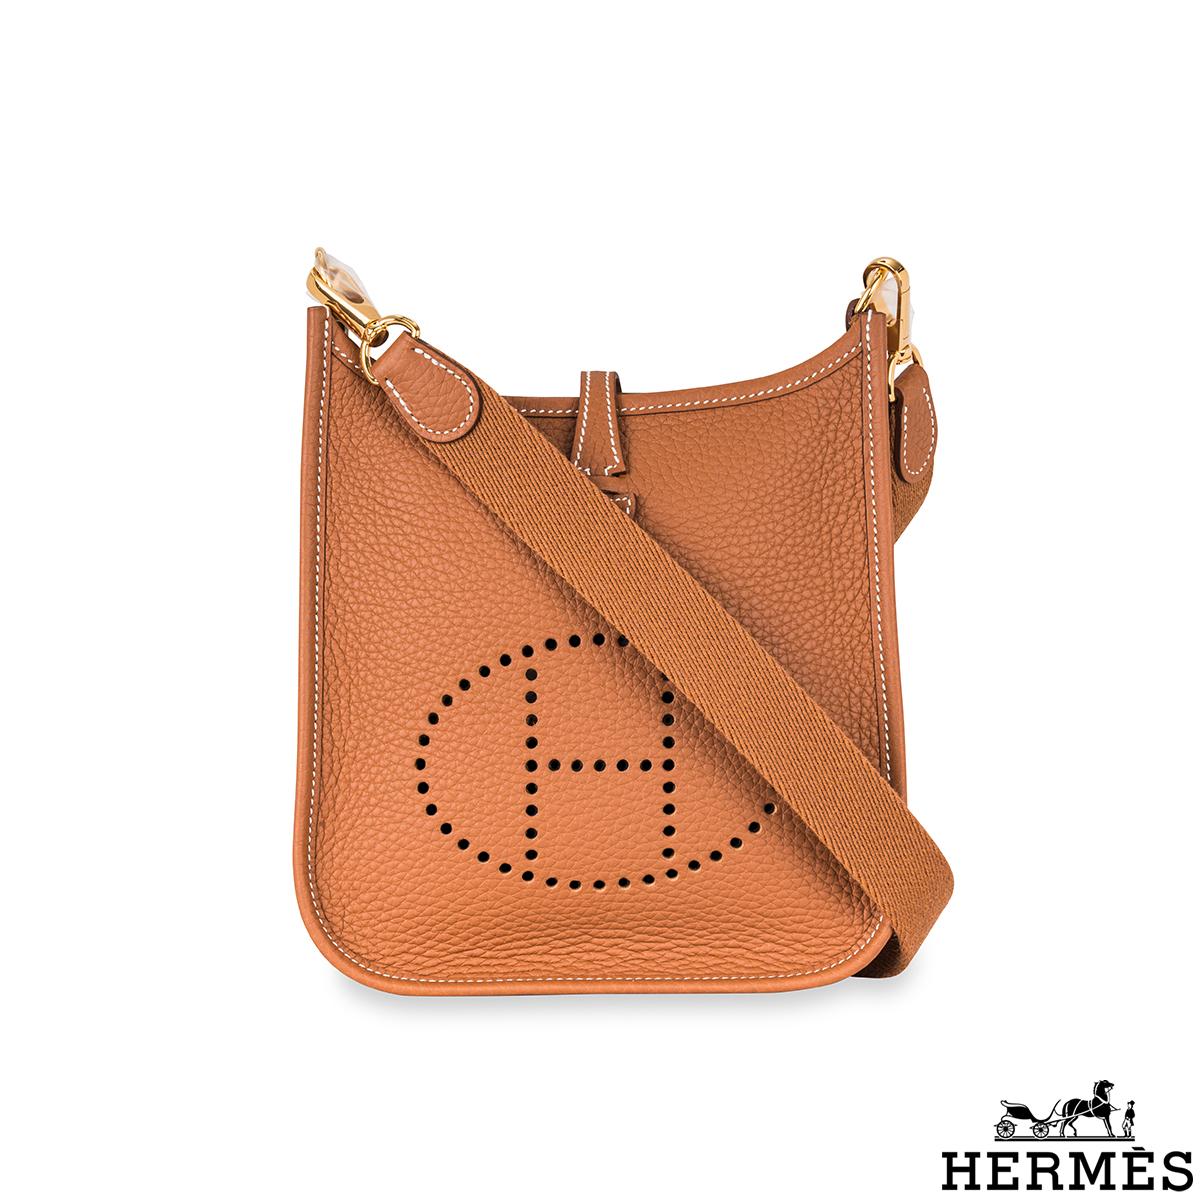 Eine schöne Hermès Mini-Handtasche Evelyne. Das Äußere dieser Evelyne-Tasche ist aus goldfarbenem Taurillon-Clemence-Leder gefertigt und wird durch goldfarbene Beschläge und weiße Nähte ergänzt. Sie verfügt über ein perforiertes 